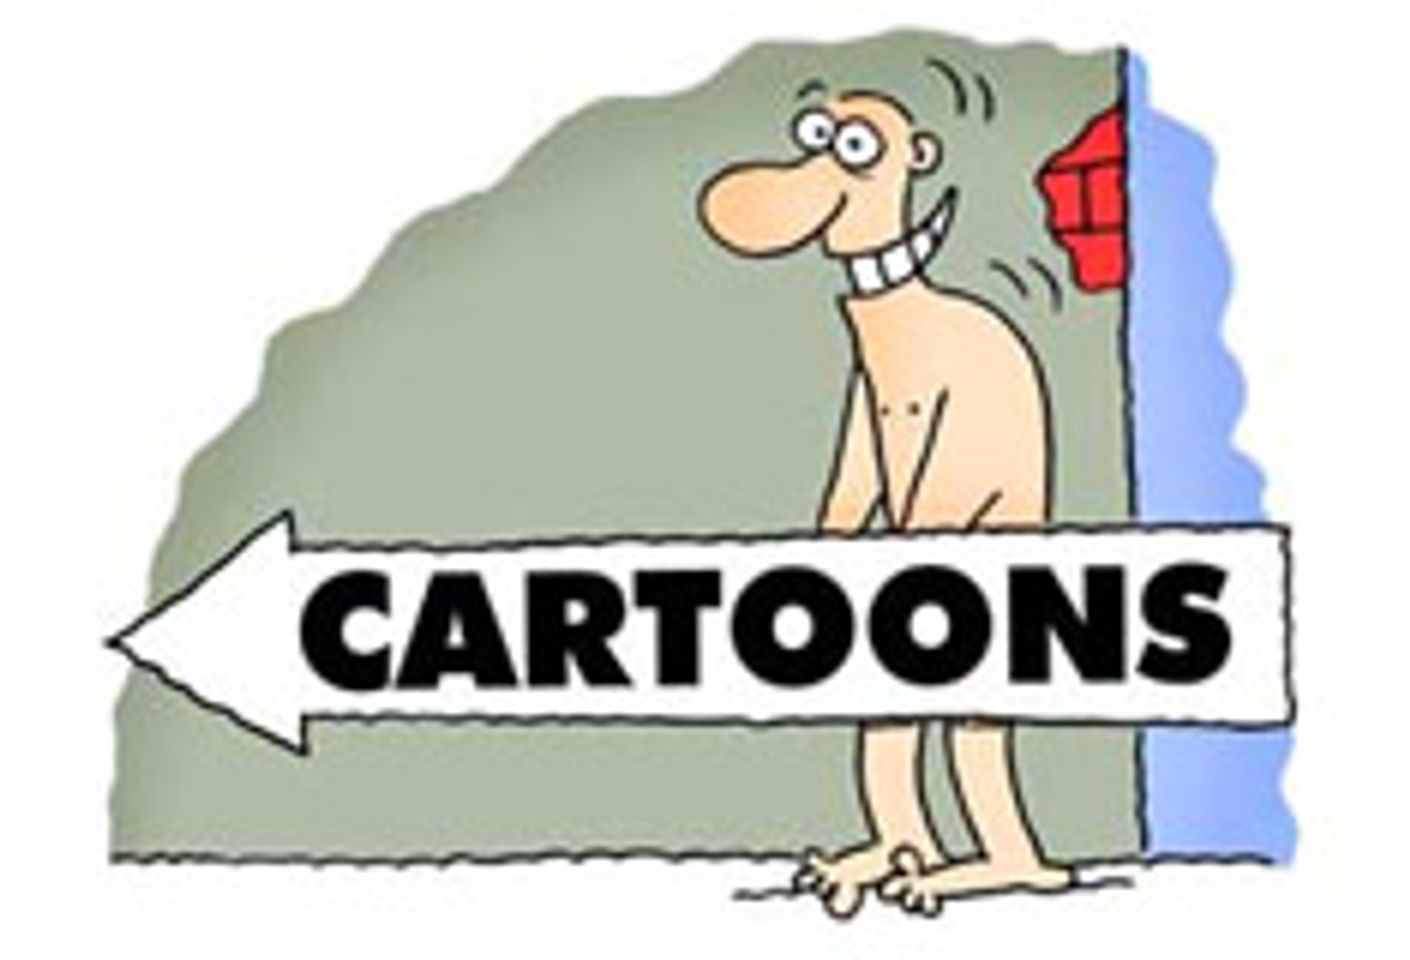 CartoonLibido.com Gets Animated